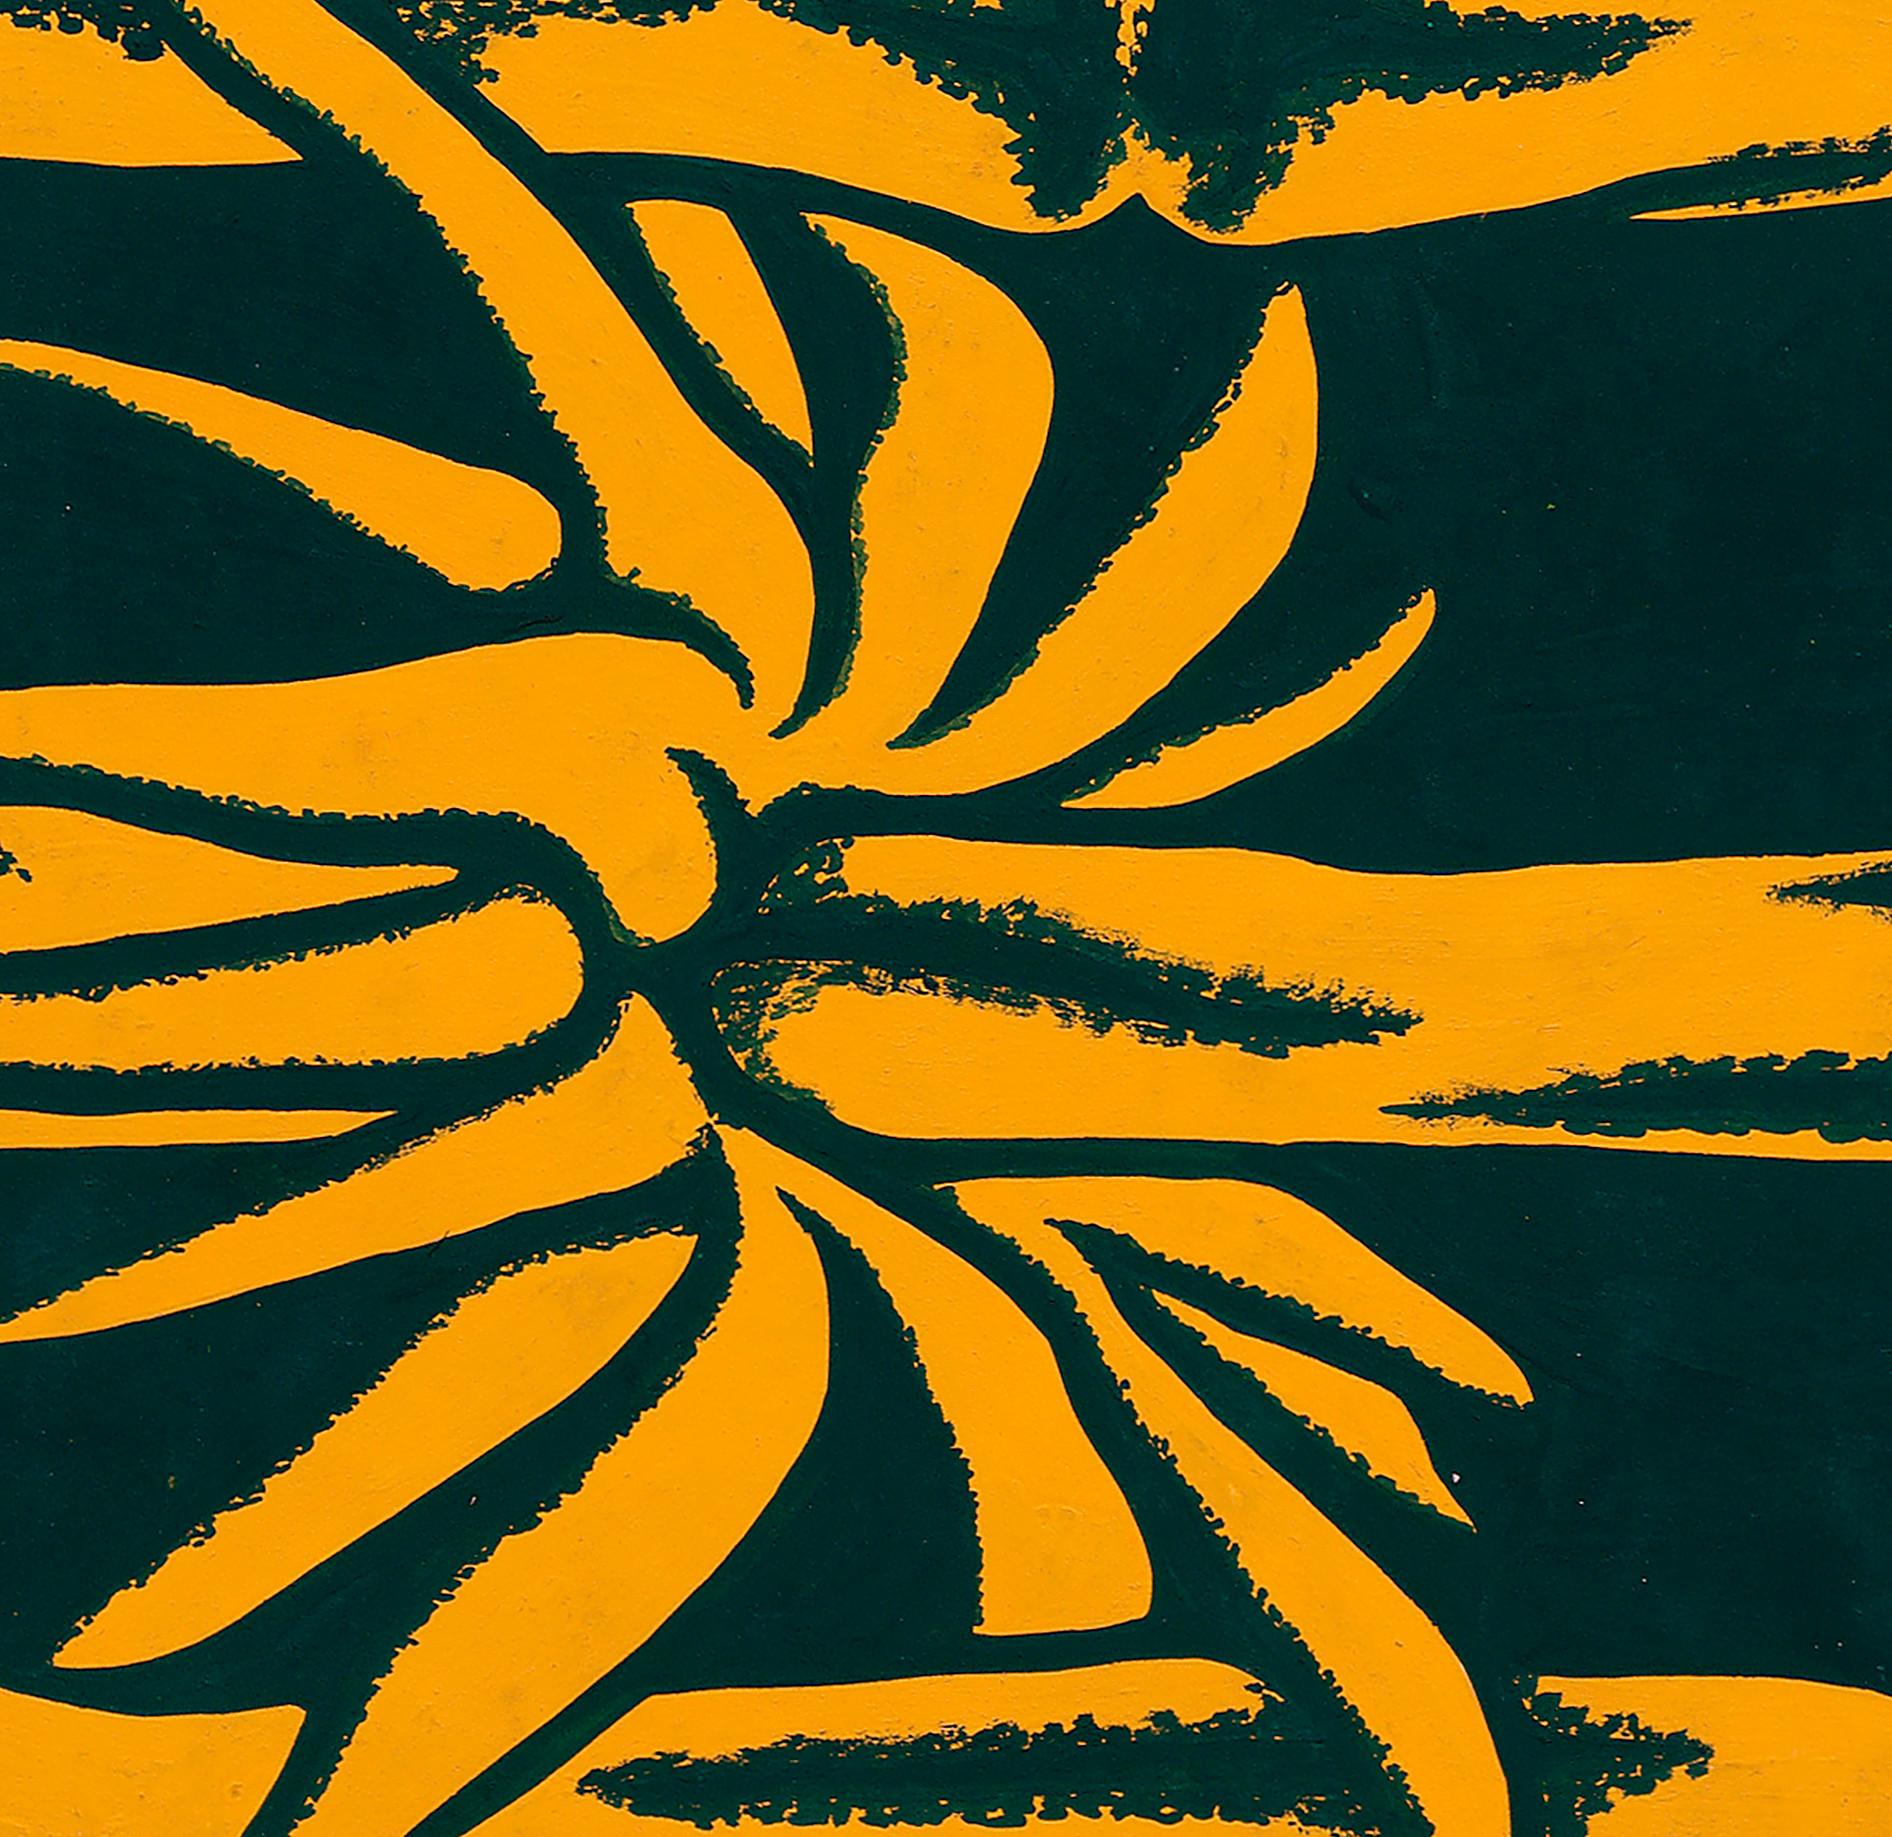 Conception textile originale des années 70 peinte à la main à la gouache, couleur orange et verte sur papier - Art de Unknown